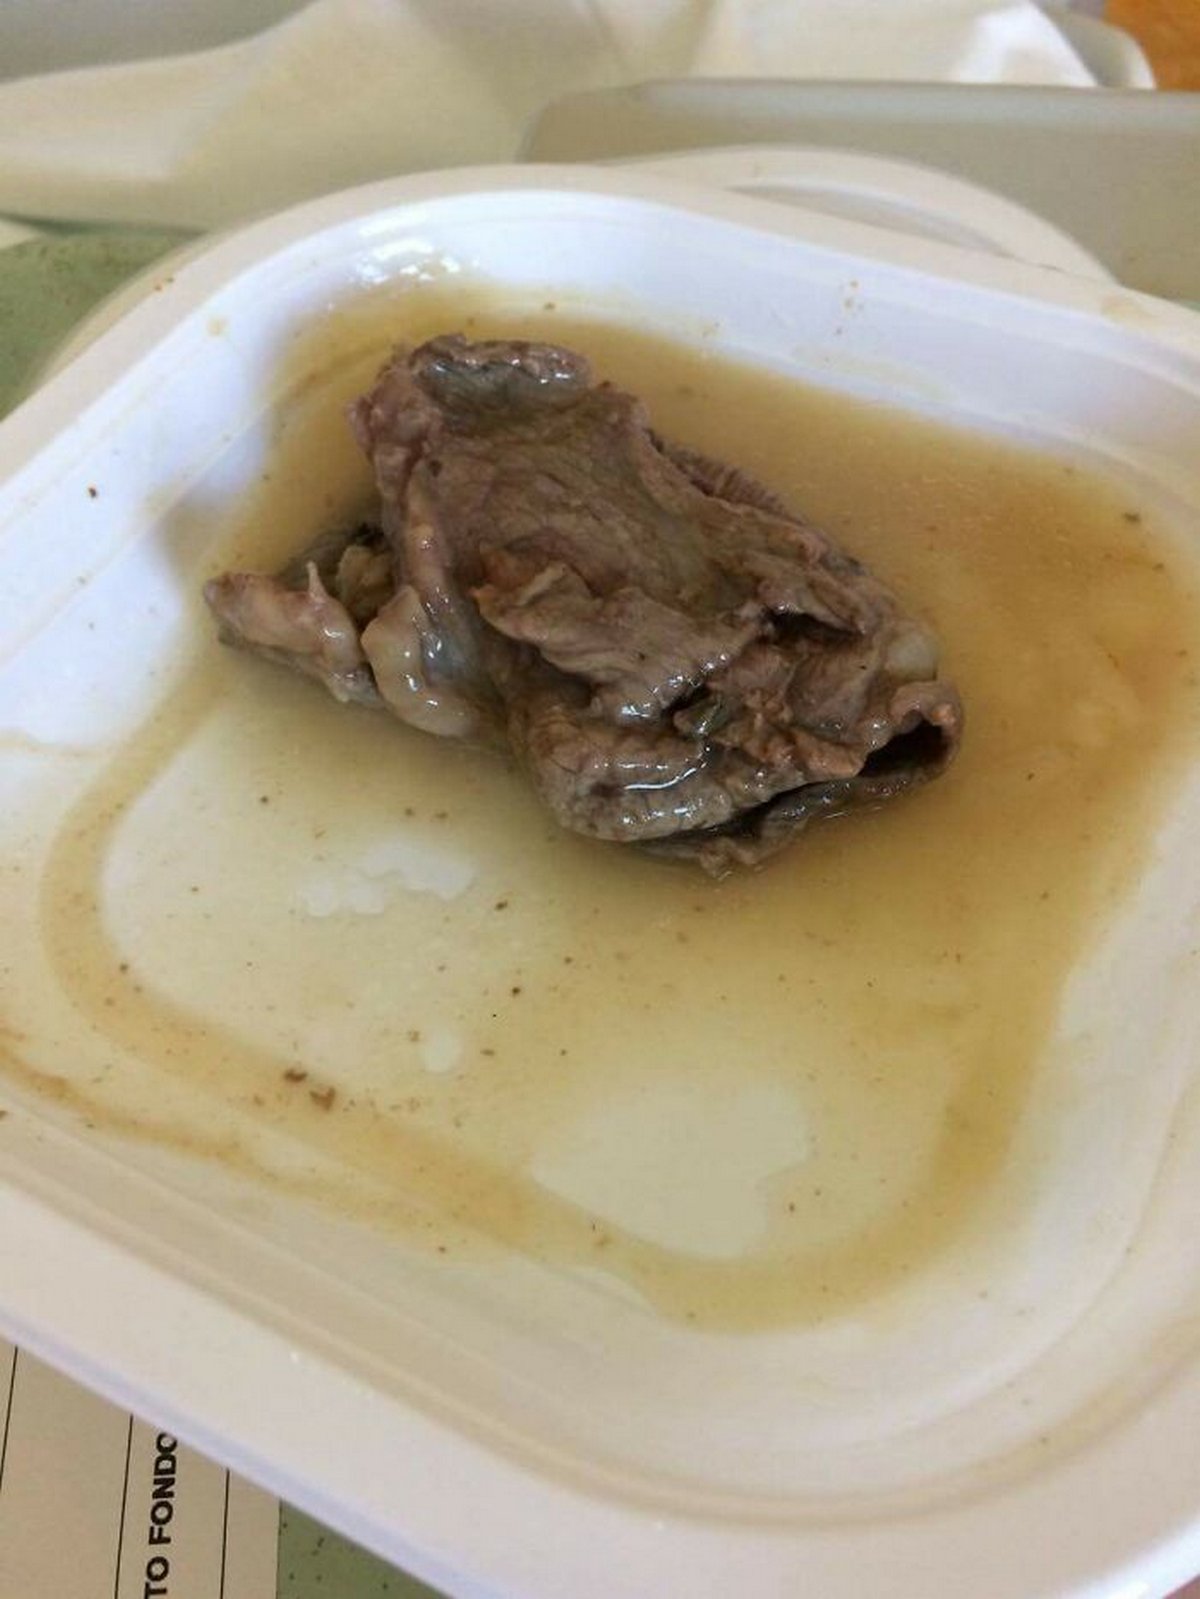 Ces gens ont reçu de la nourriture d’hôpital si dégoûtante qu’ils ont décidé de partager des photos en ligne